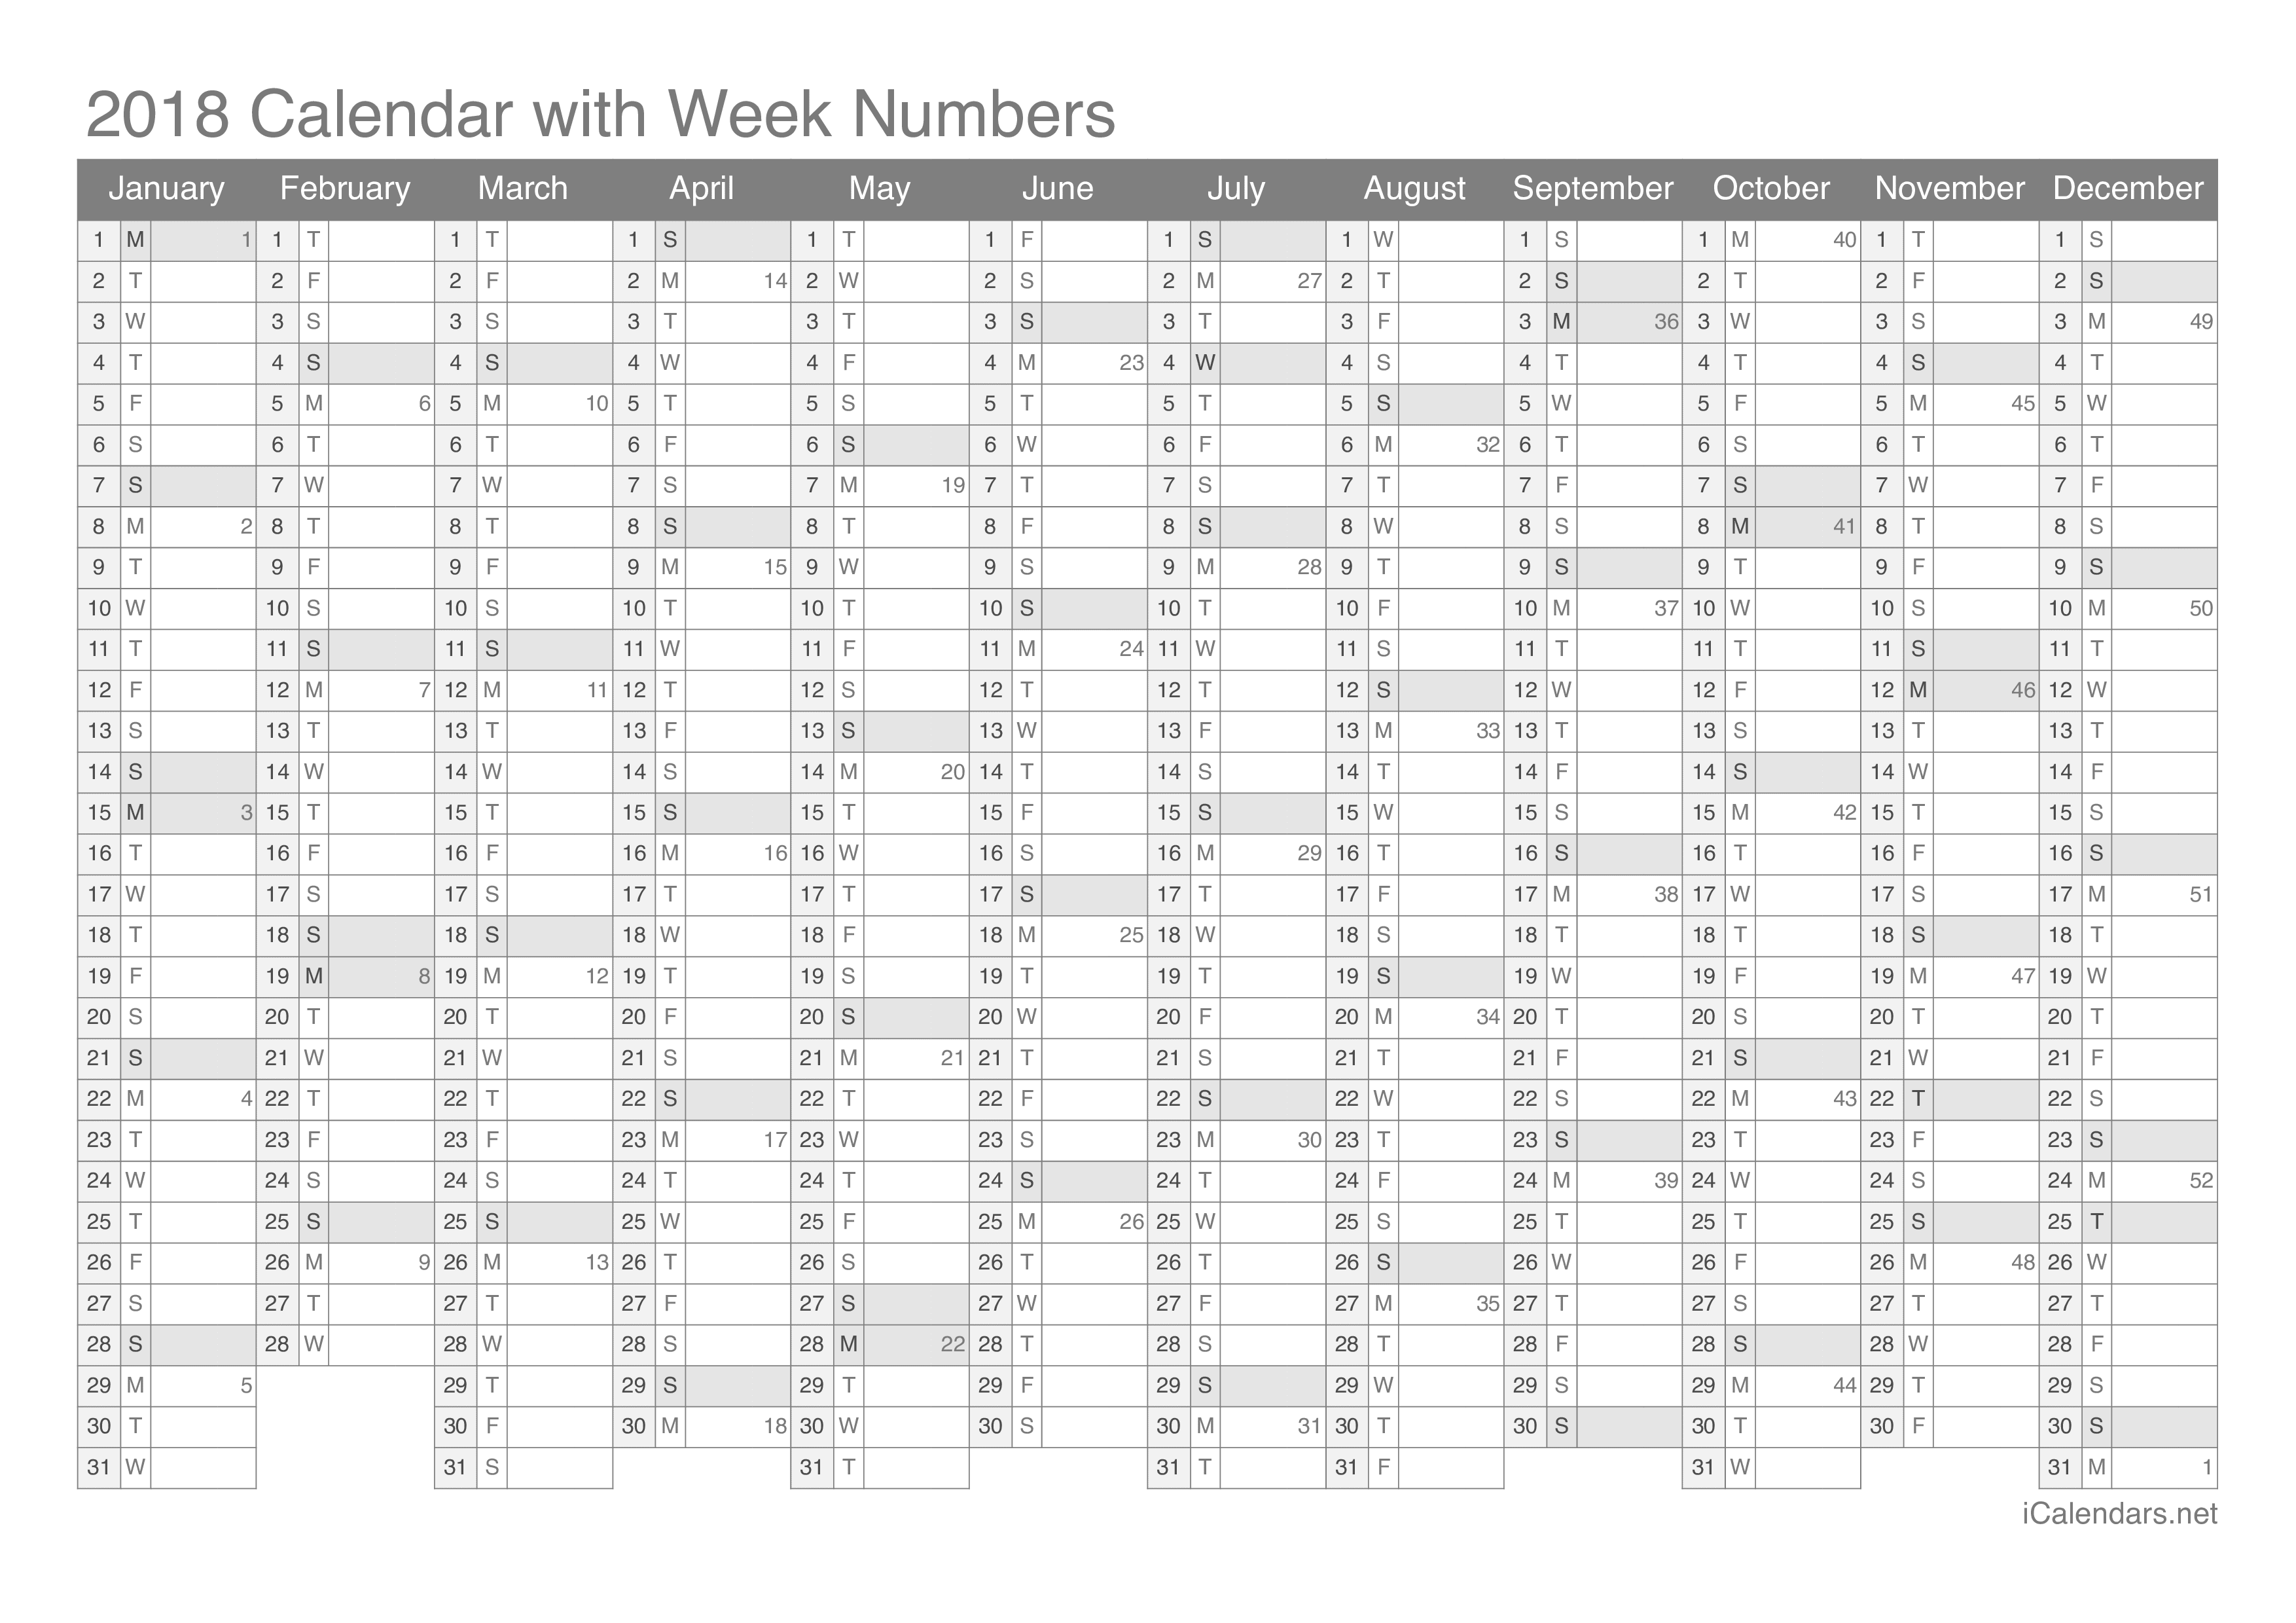 2018 Calendar with week numbers